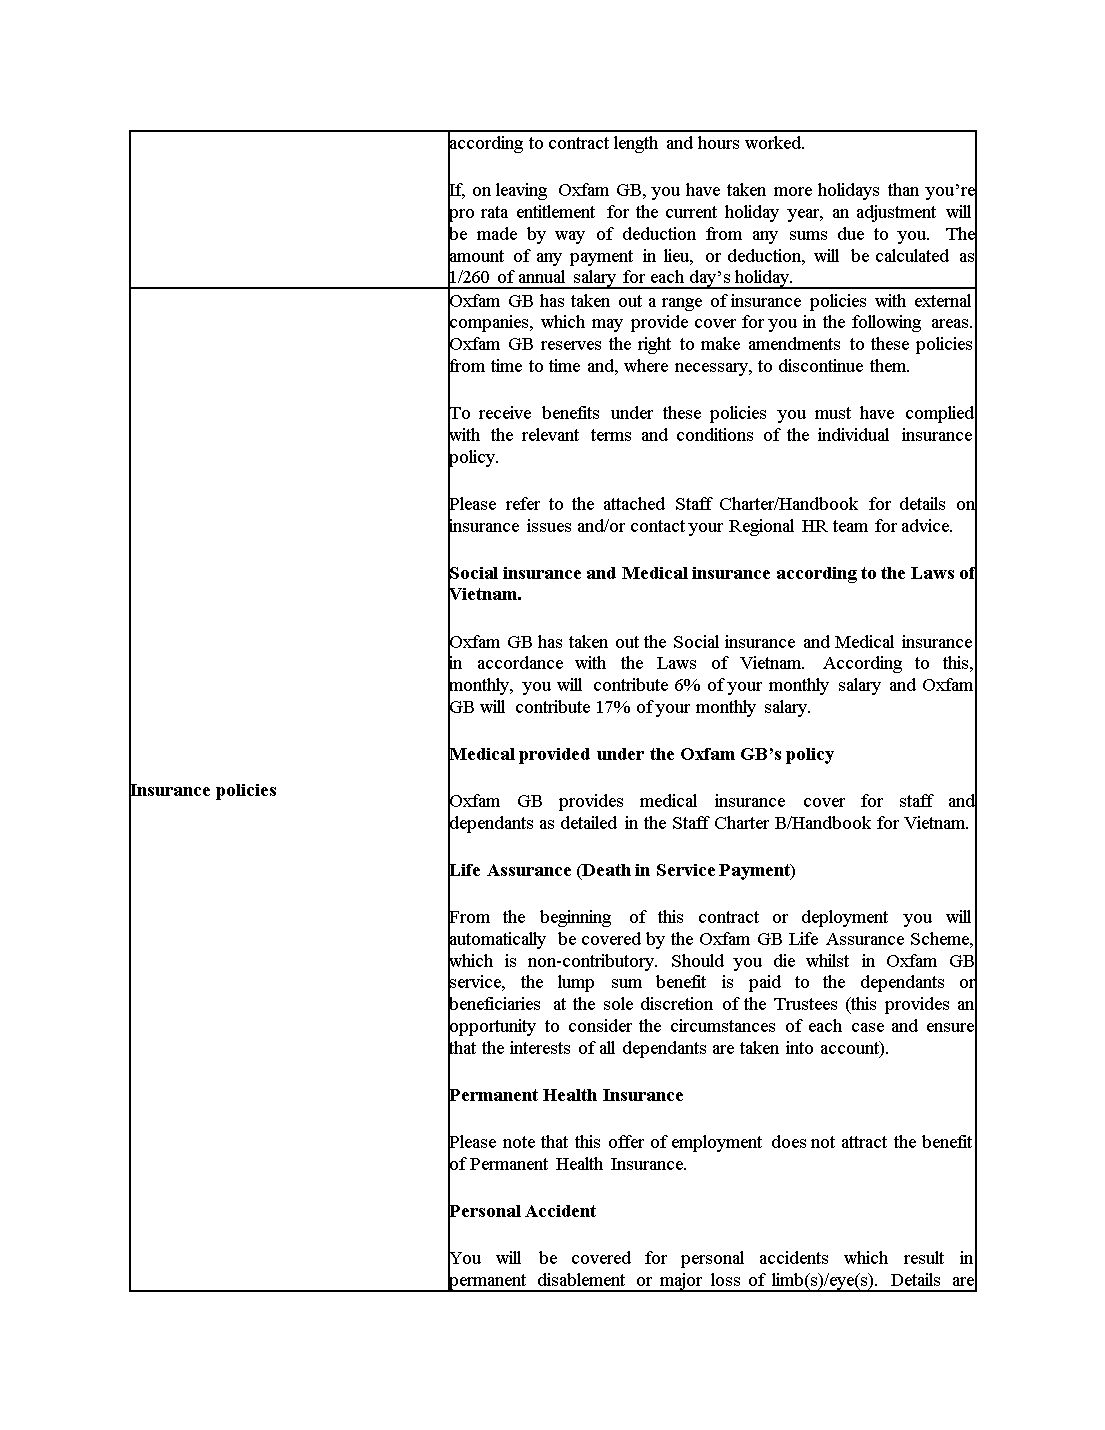 Mẫu hợp đồng bằng tiếng Anh - Mẫu số 2 trang 5